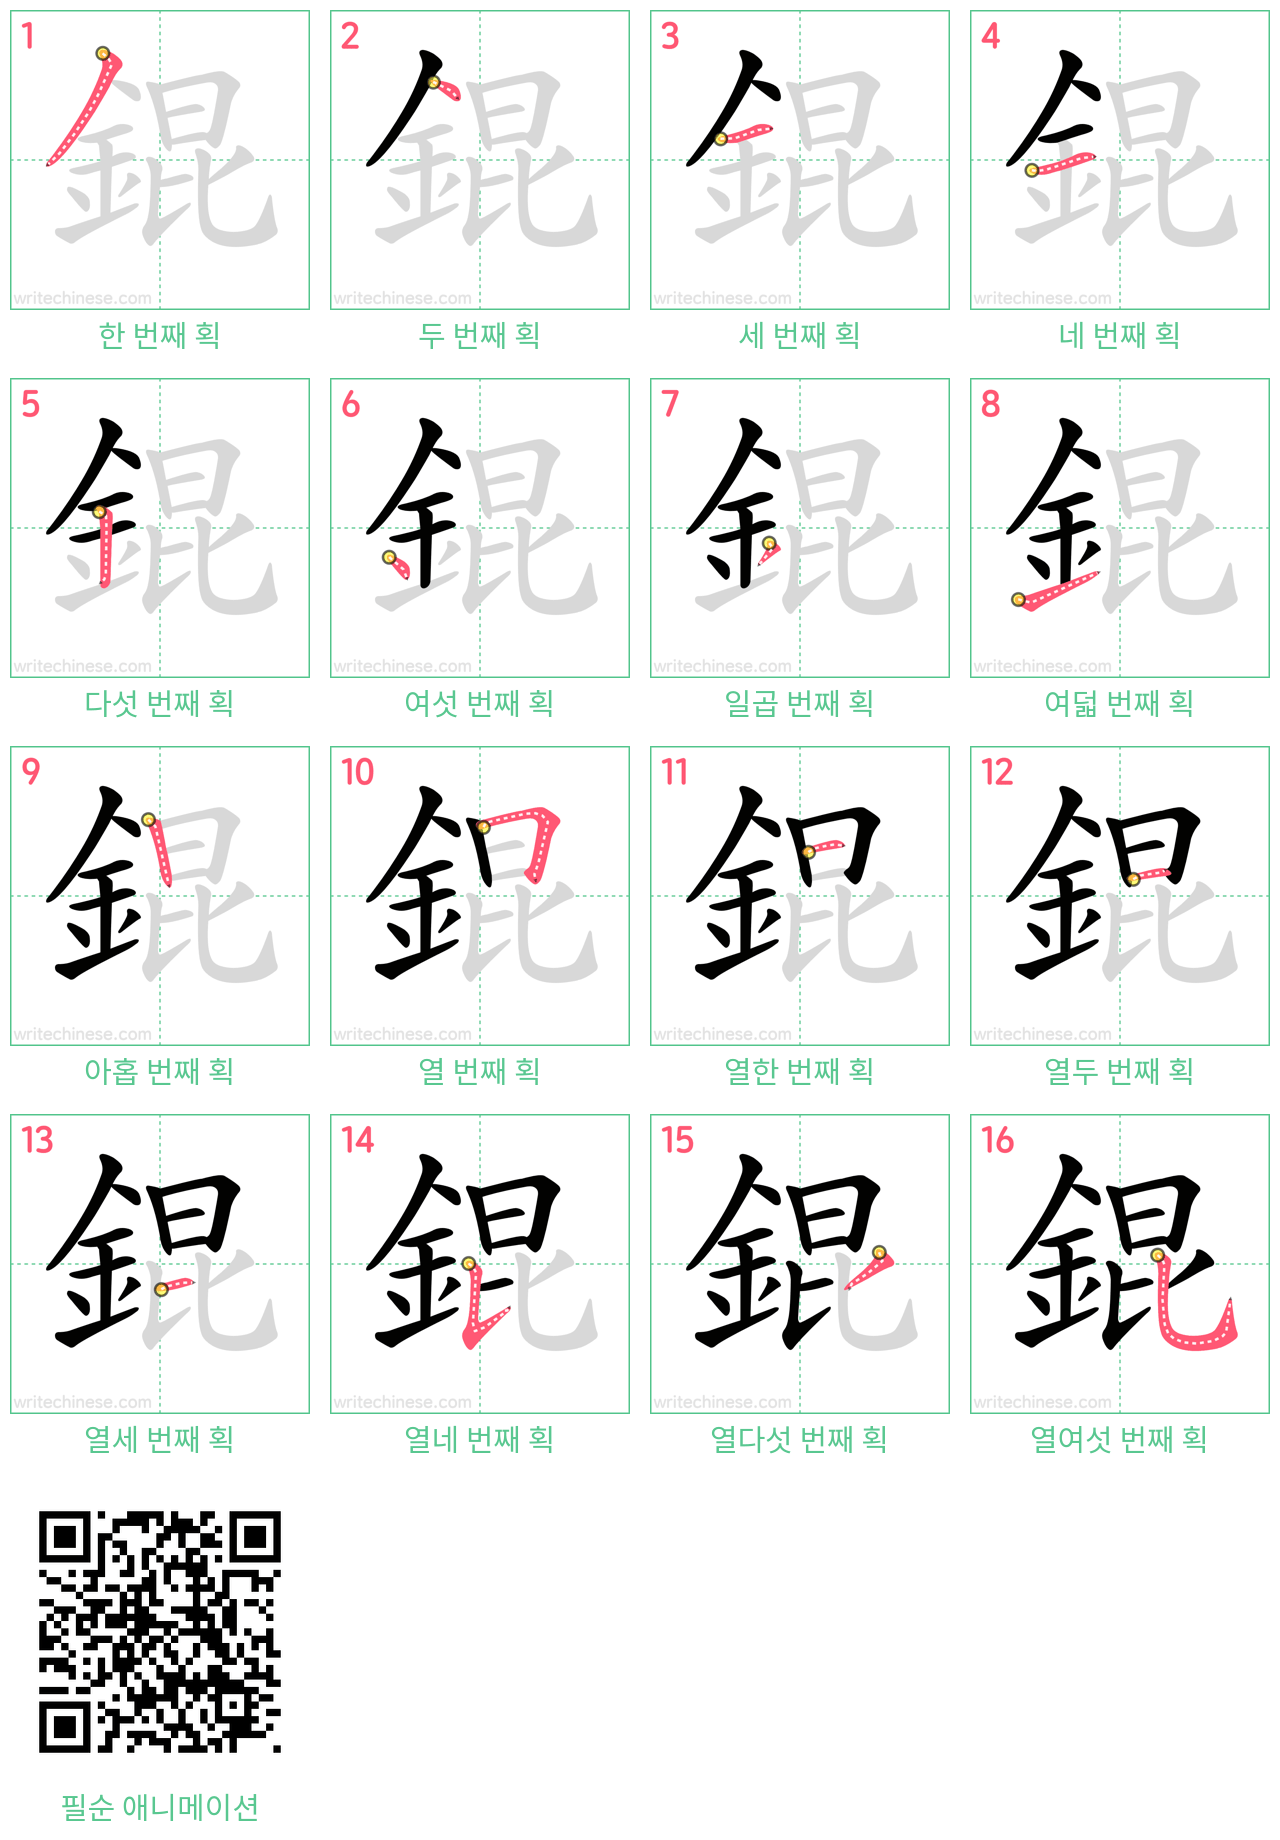 錕 step-by-step stroke order diagrams